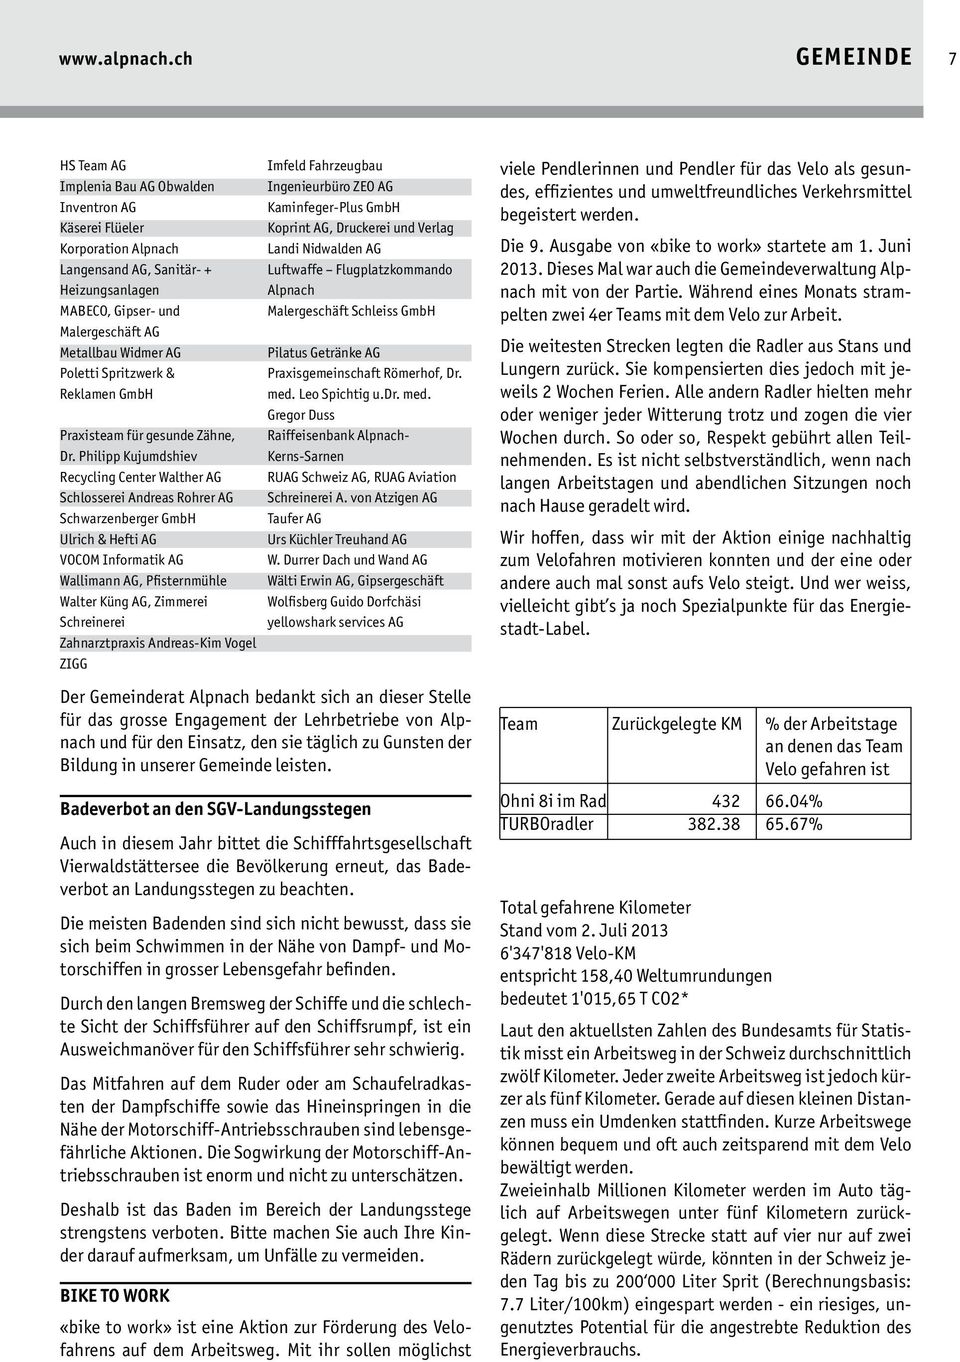 Poletti Spritzwerk & Reklamen GmbH Praxisteam für gesunde Zähne, Dr.